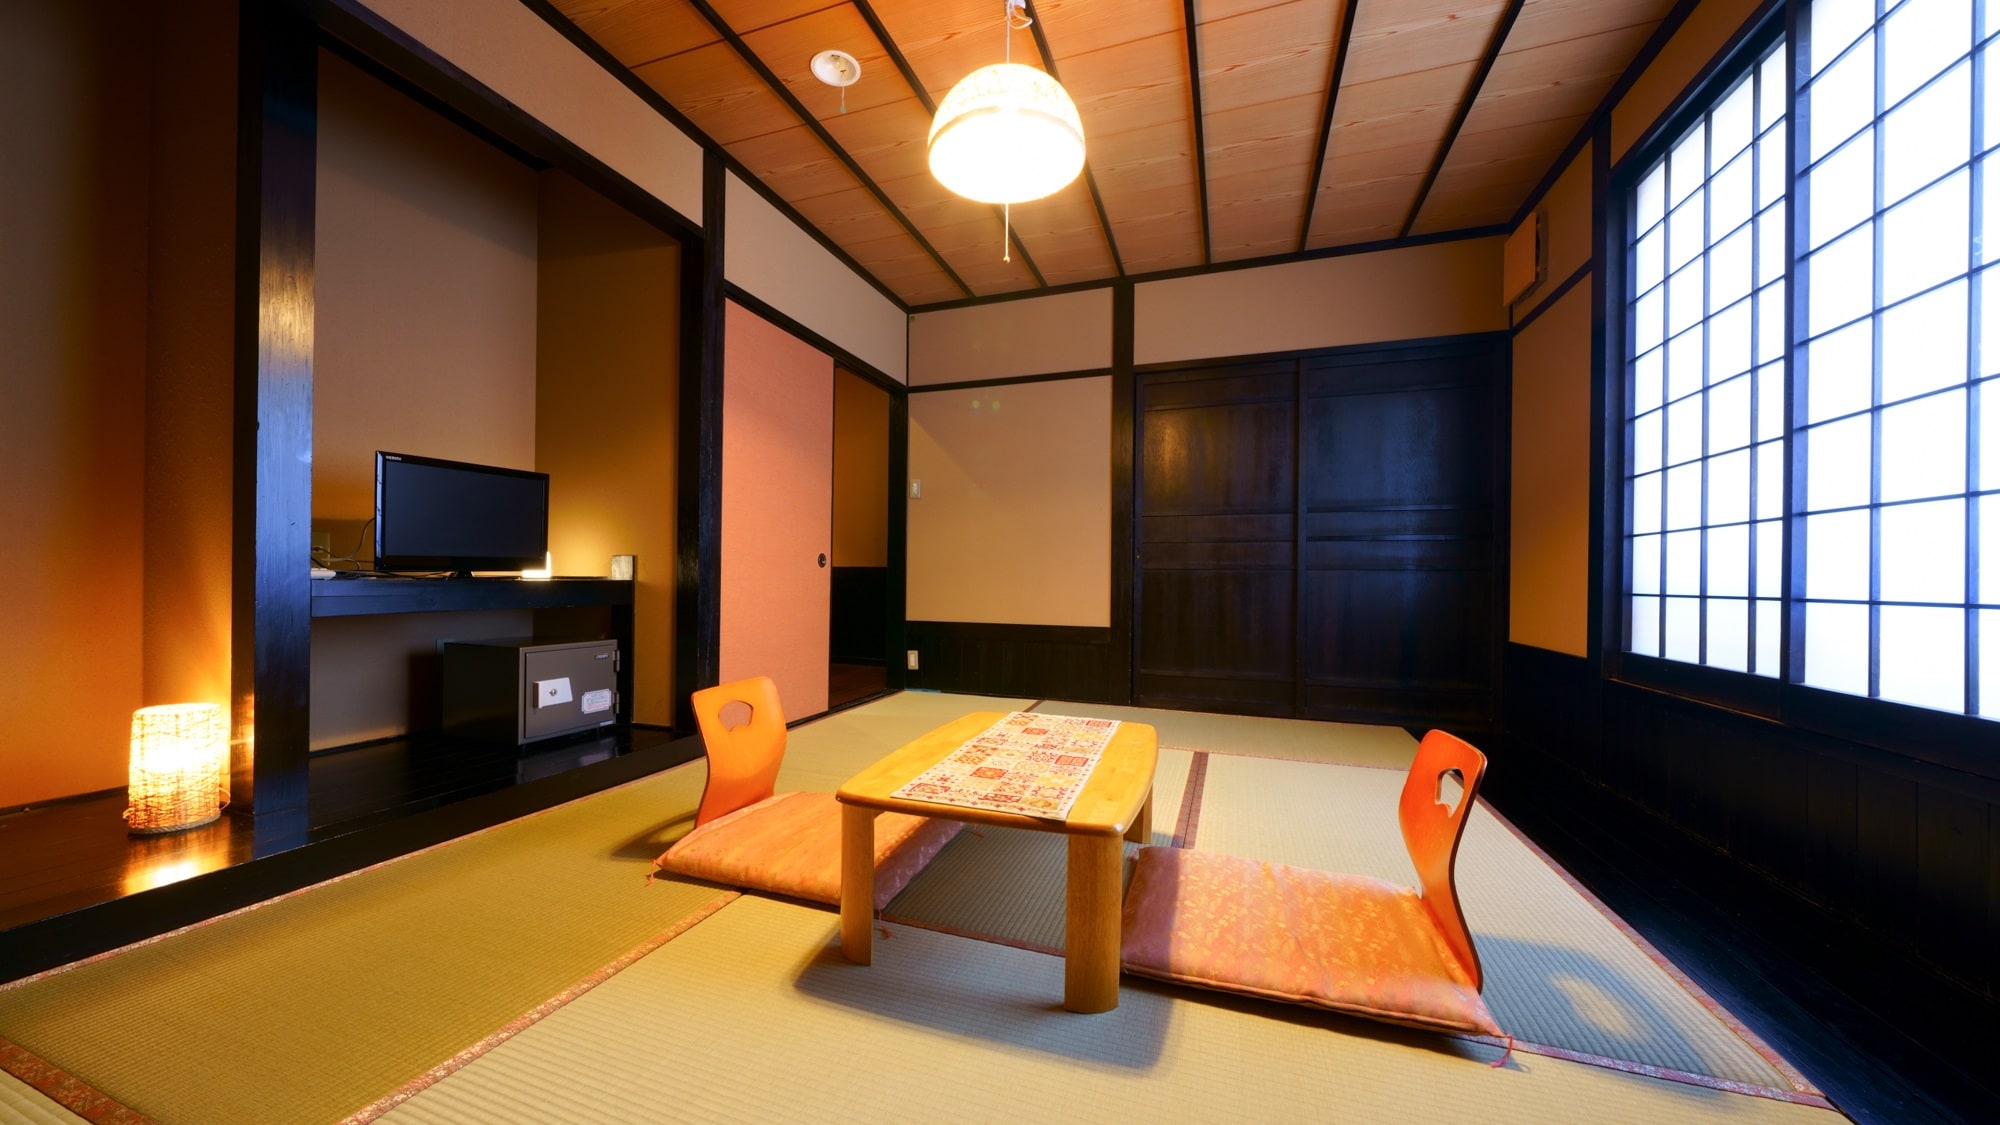 傳統日式房間的例子